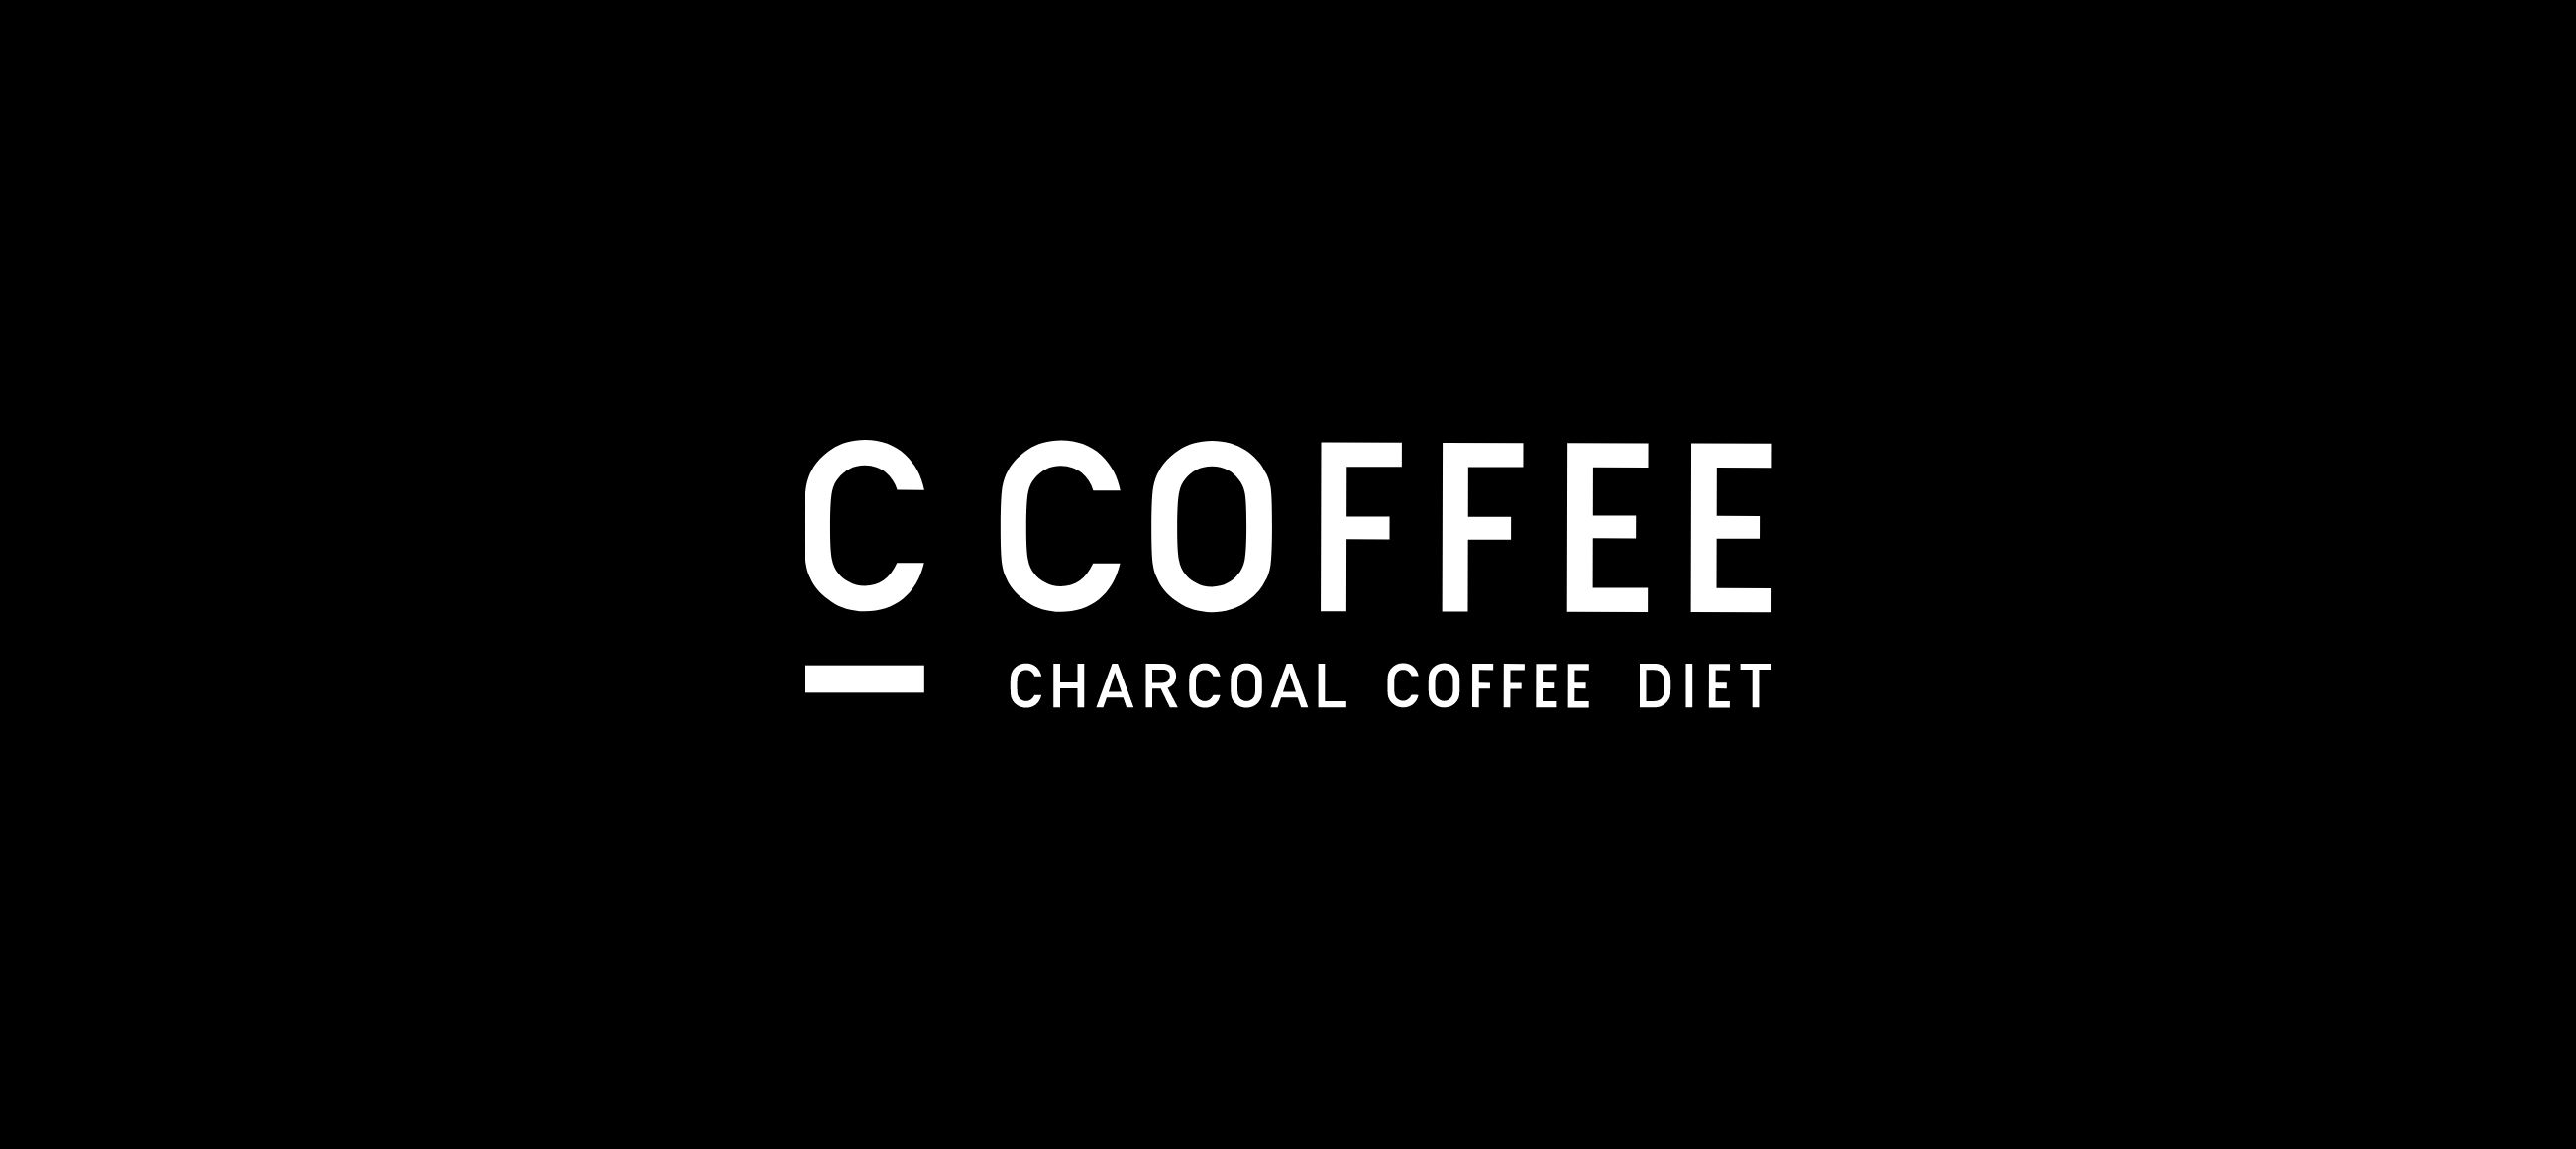 3000円 【返品送料無料】 C COFFEE チャコールコーヒーダイエット